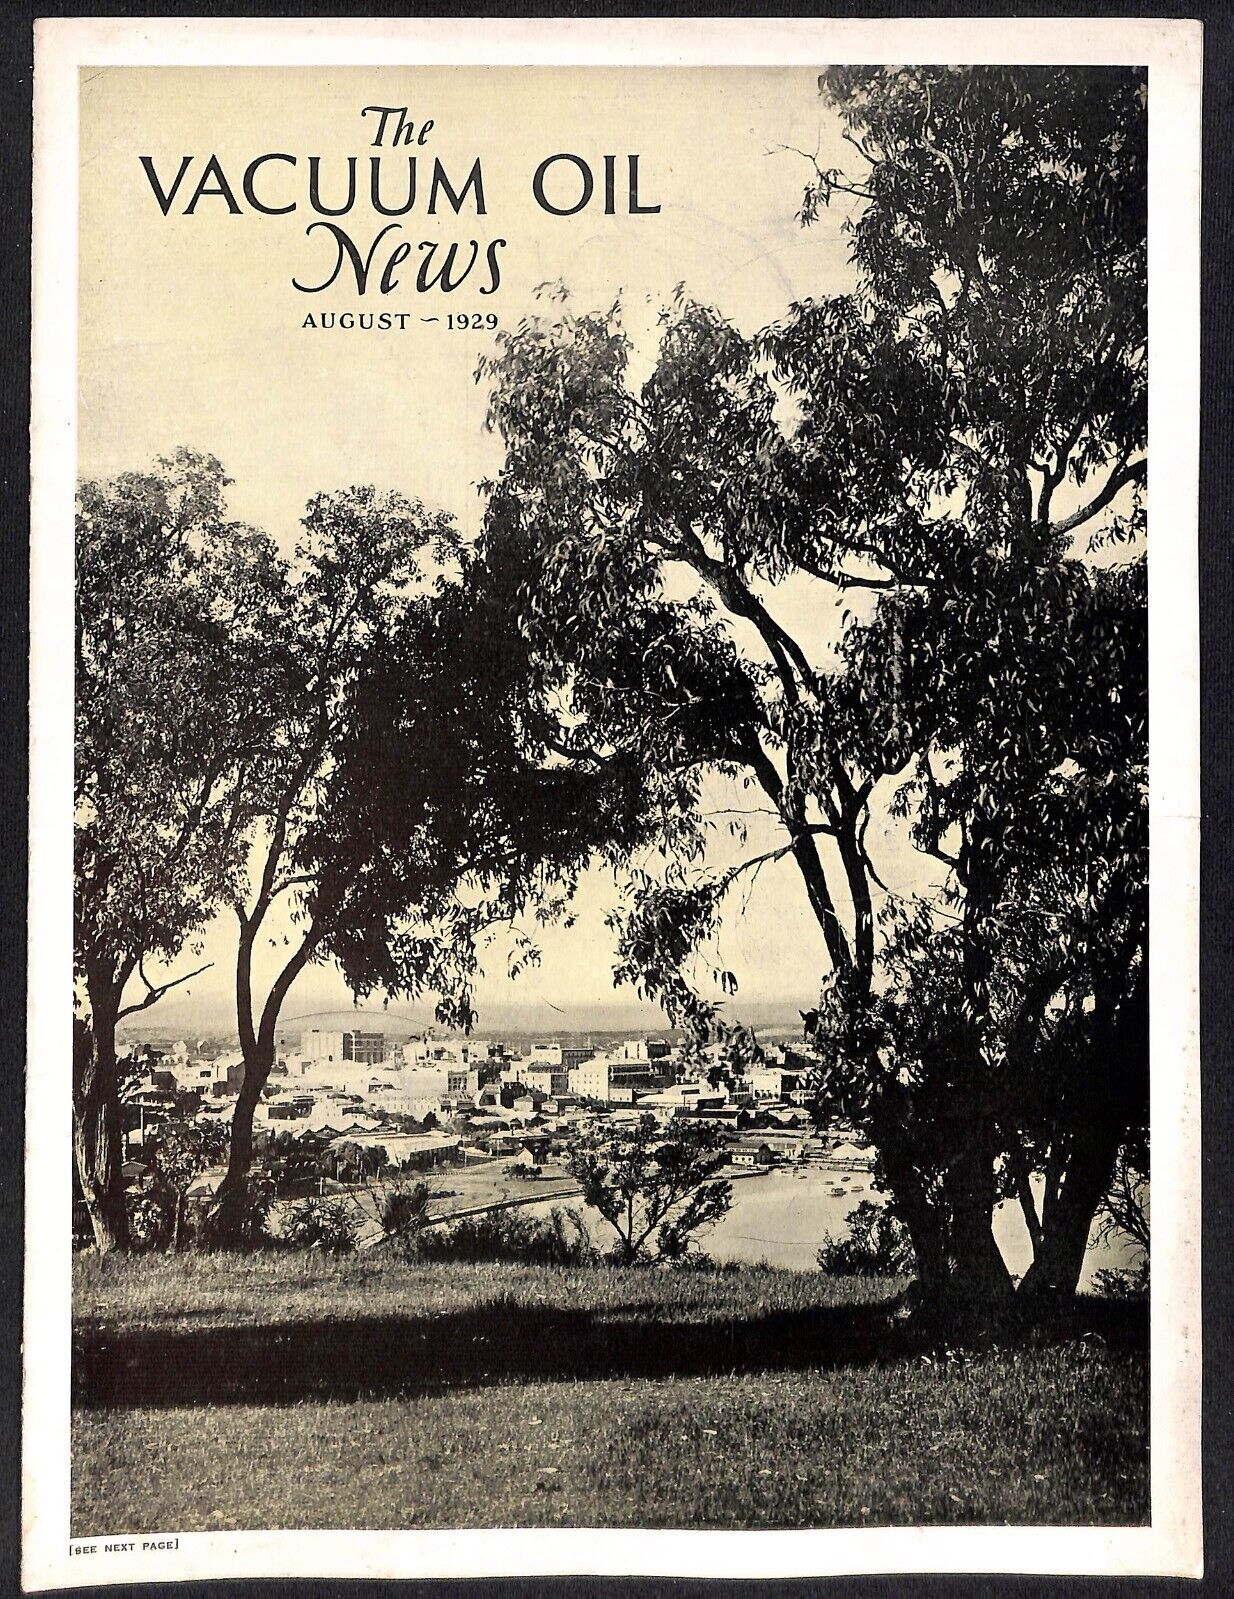 Vacuum Oil News Mobiloil Mobil Oil Gargoyle August 1929 16pp. Scarce VGC